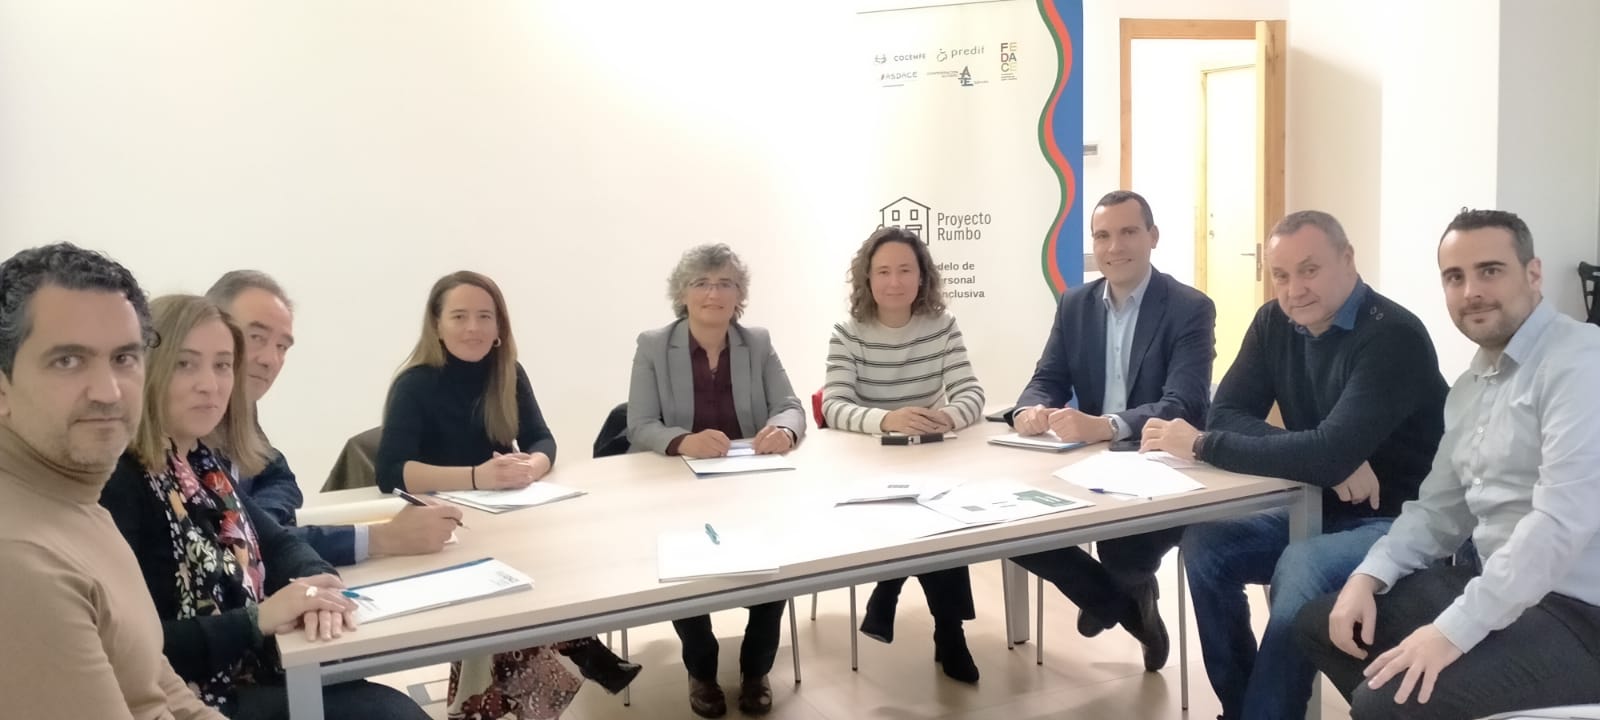 Cuatro federaciones de la discapacidad de Galicia presentan el proyecto RUMBO a la Consellería de Política Social